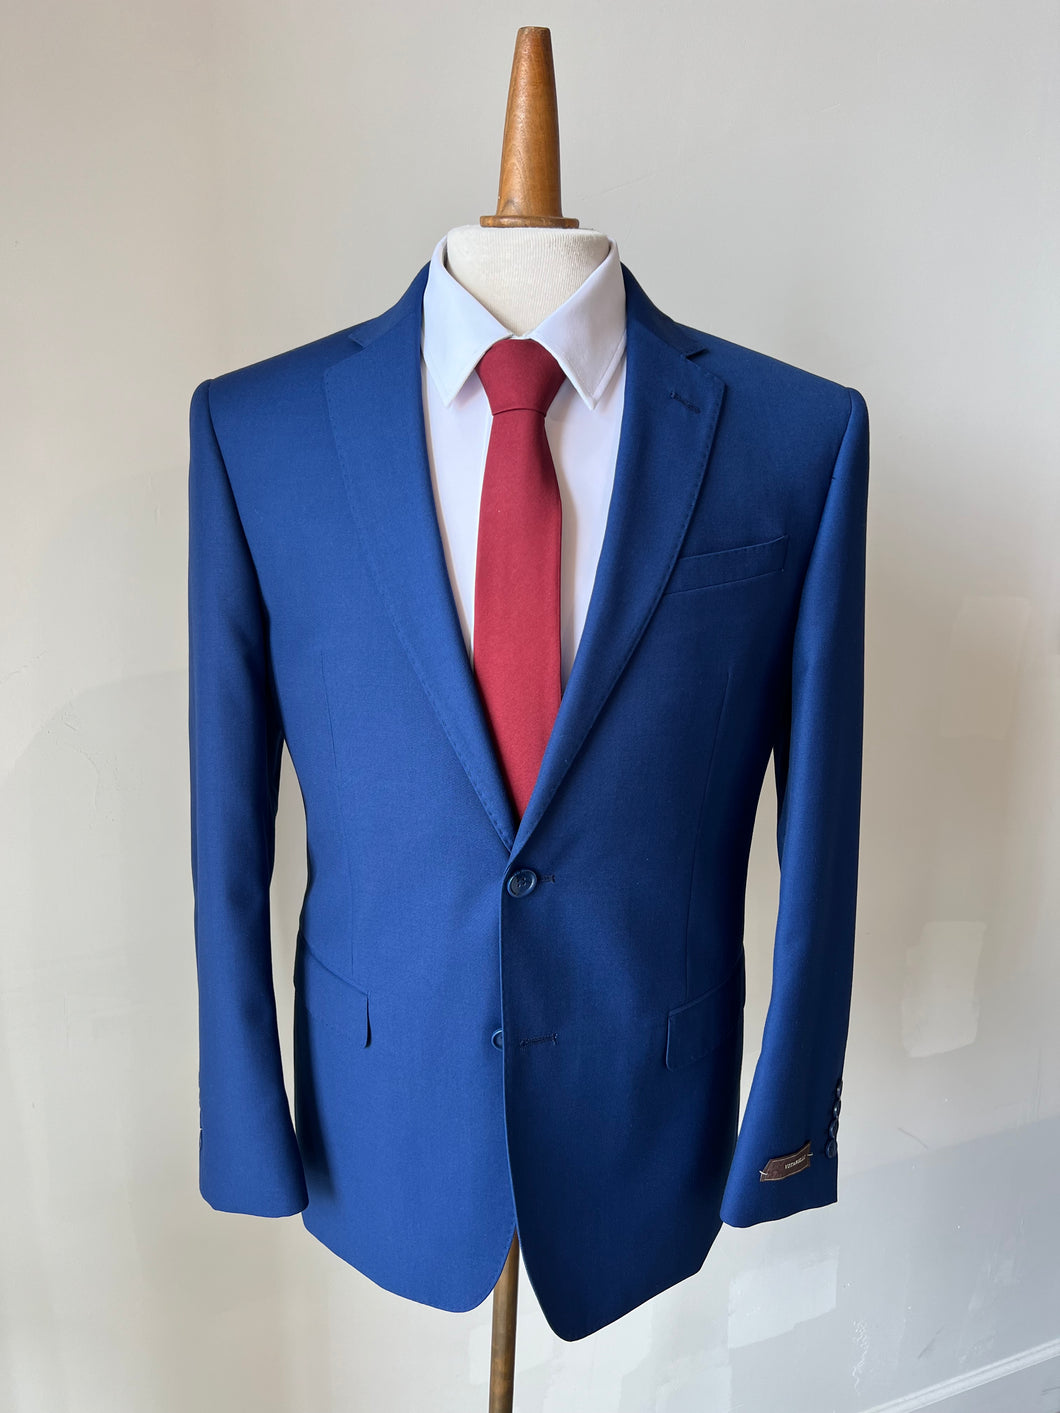 V Suit - Royal Blue